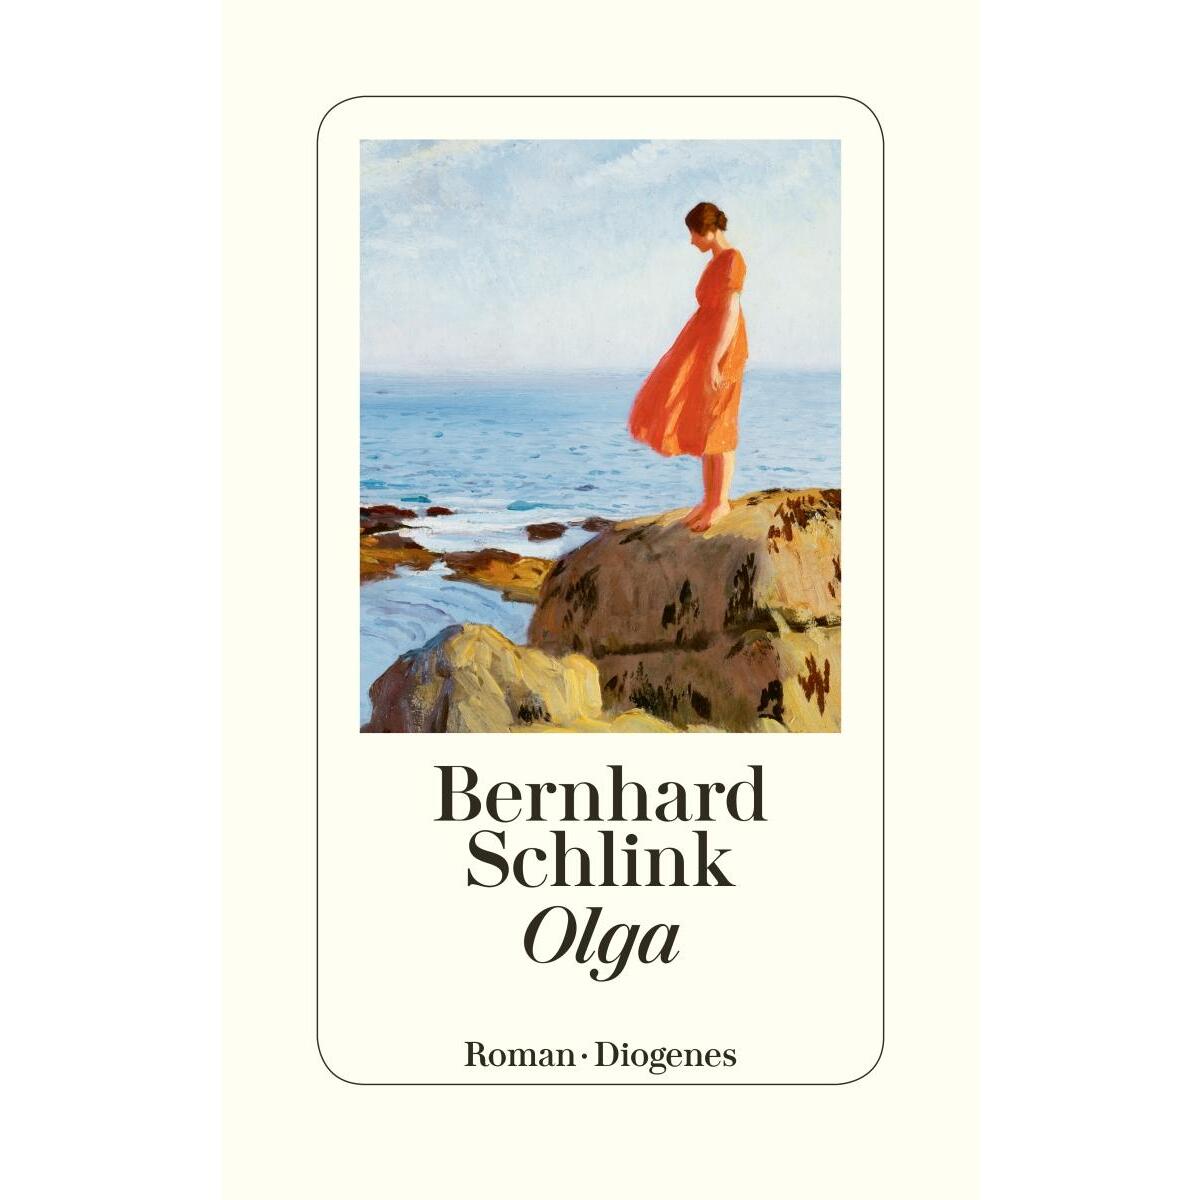 Olga von Diogenes Verlag AG